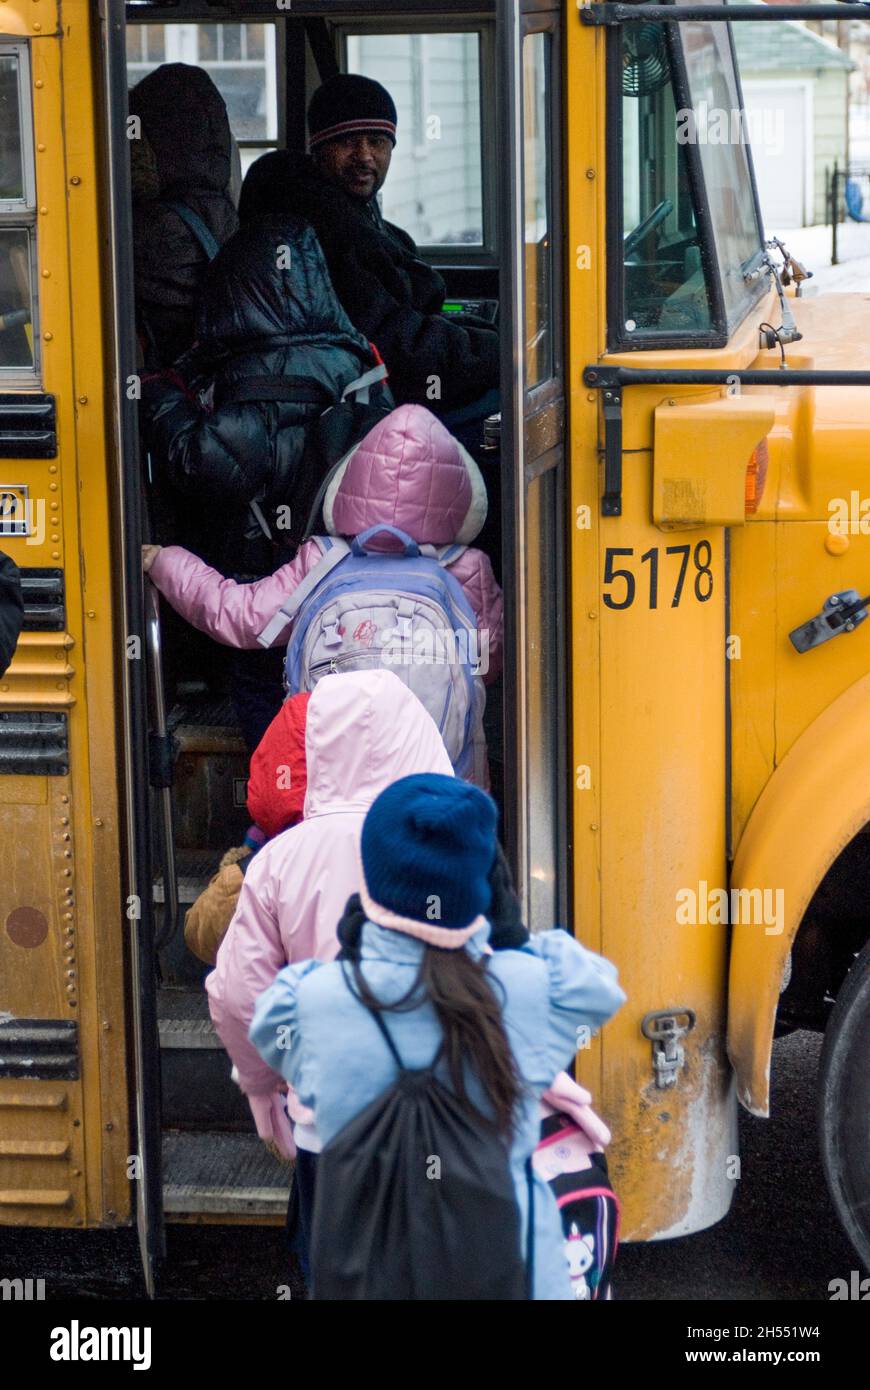 St. Paul, Minnesota. Scuola charter per l'Hmong. Gli studenti di Hmong lasciano la scuola in una giornata fredda per salire sul bus della scuola. Foto Stock